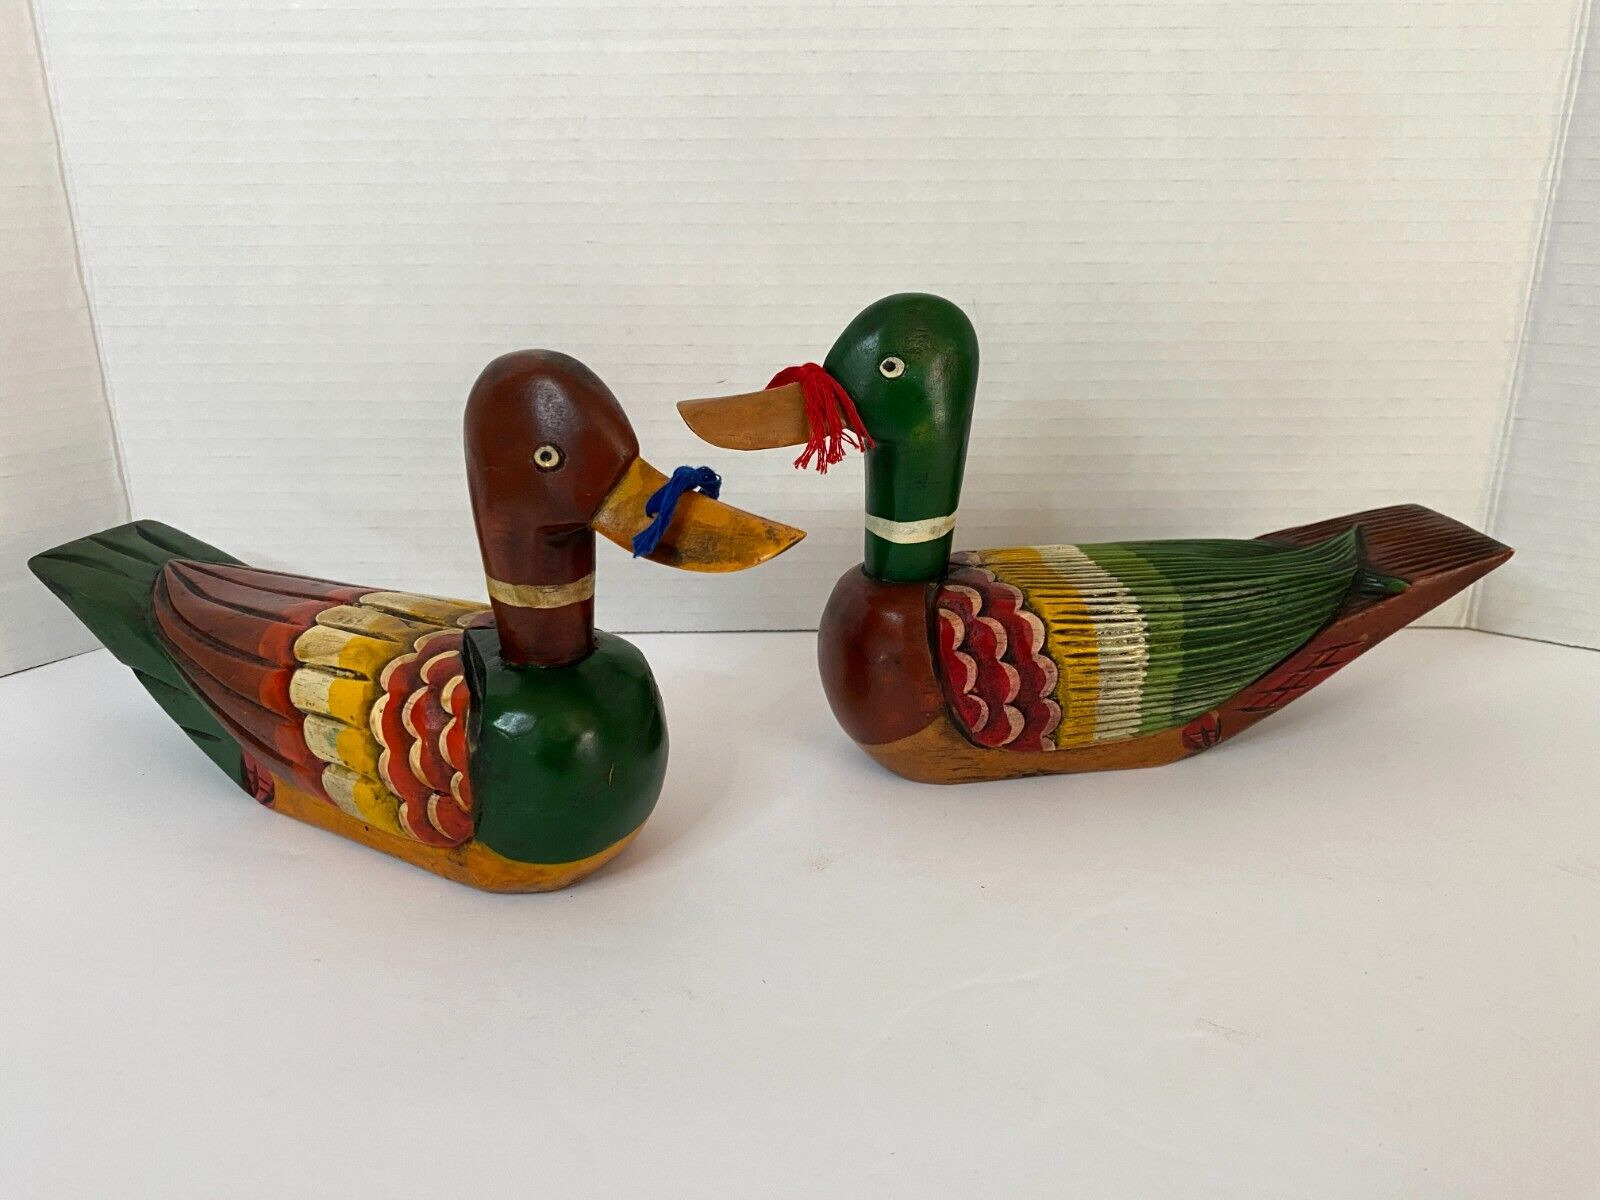 Korean Wedding Ducks Wood Hand-Carved Hand-Painted Pair Red Blue Strings Vintage